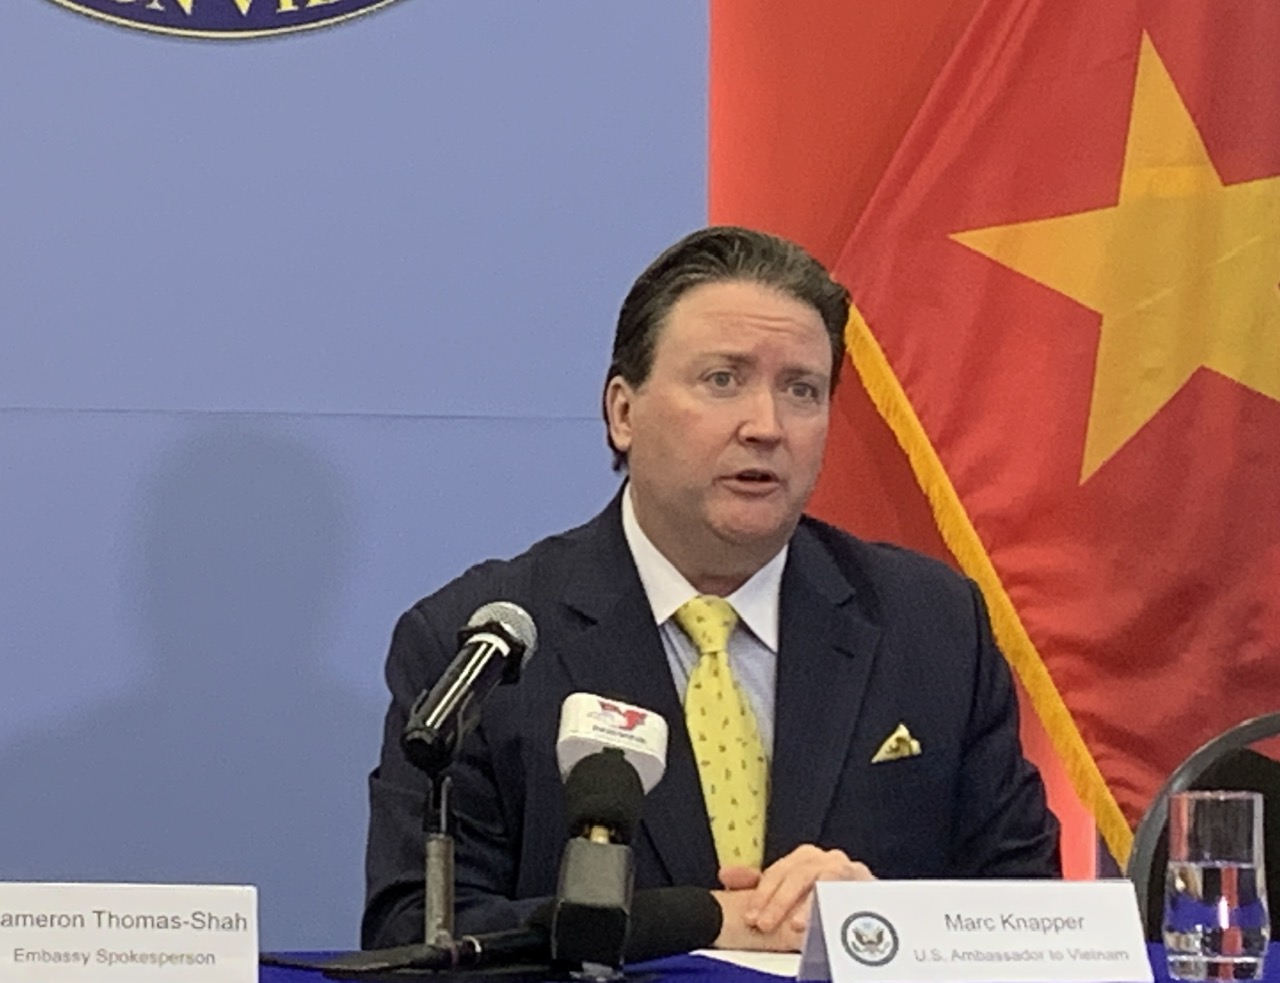 Đại sứ Mỹ nói về vụ tấn công ở Đắk Lắk: Lên án mạnh mẽ, không dung thứ dưới bất kỳ hình thức nào - Ảnh 1.